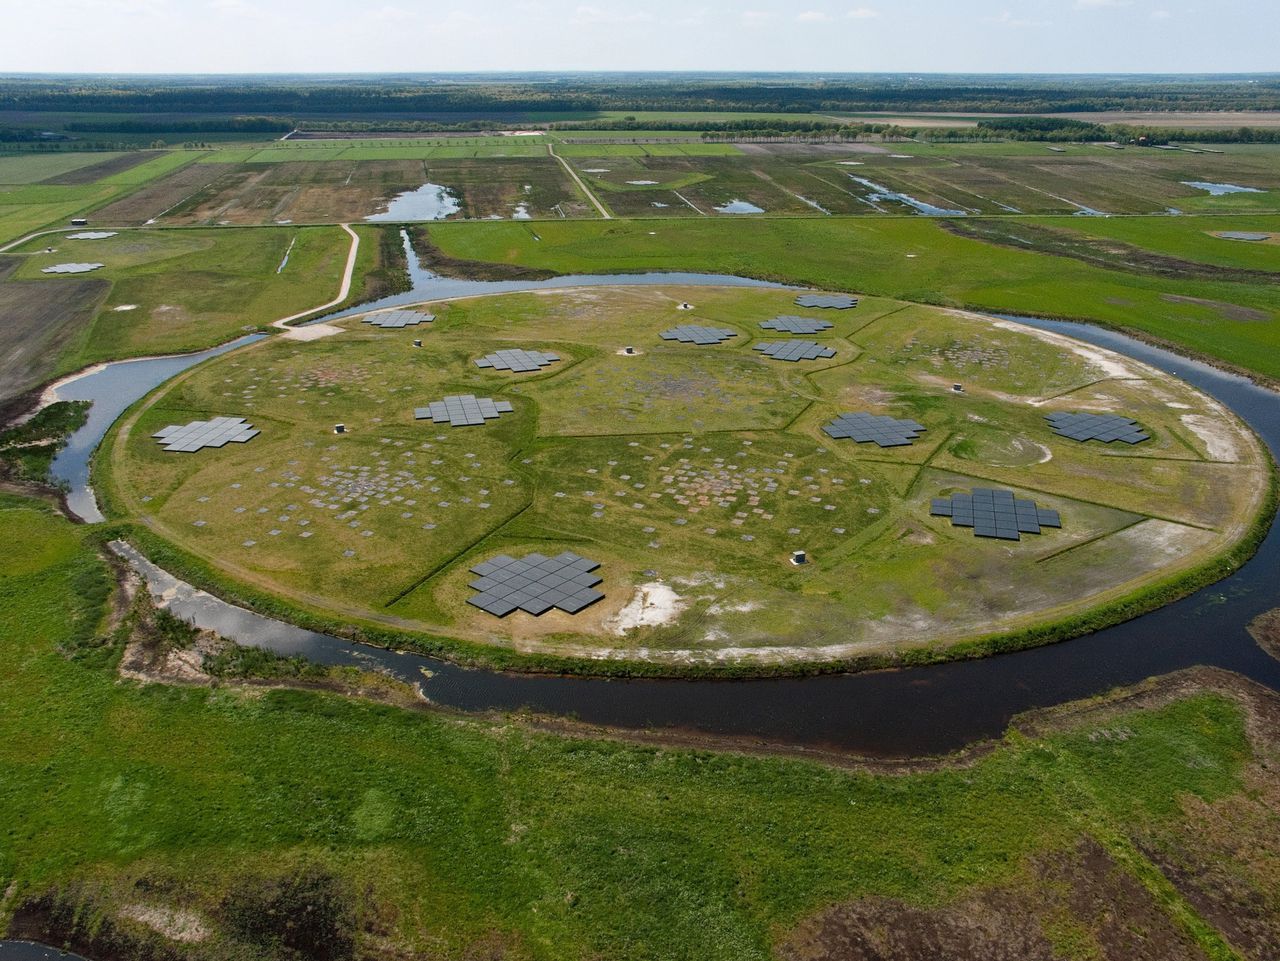 Het hart van Lofar in Drenthe, een radiotelescoop die is opgebouwd uit een groot aantal over Europa verspreide antennes.